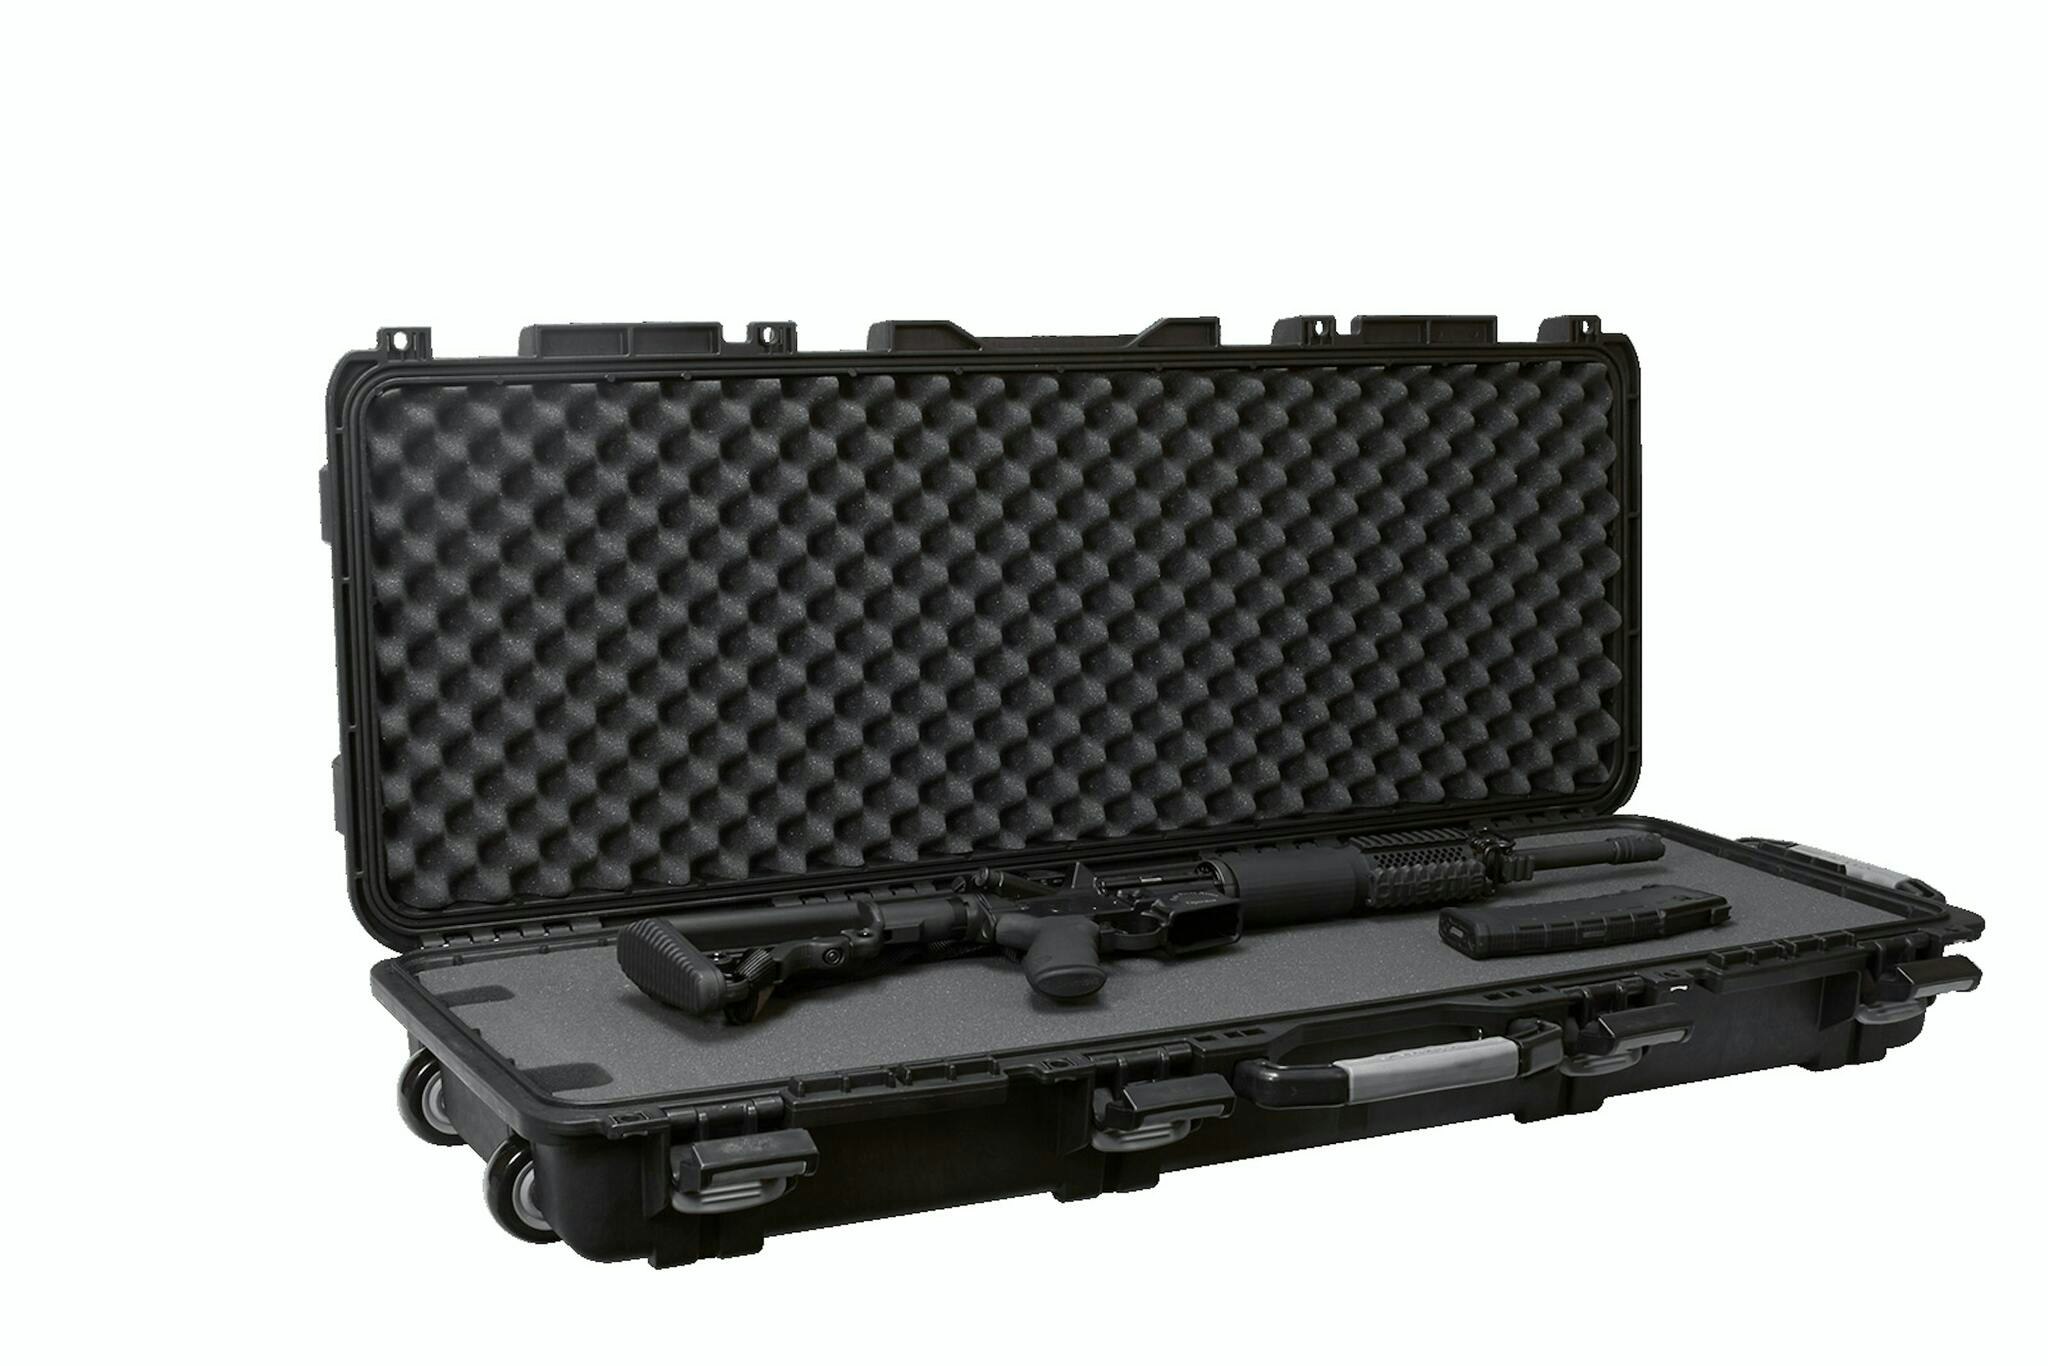 Plano - MS Field locker - Tactical long gun case with wheels